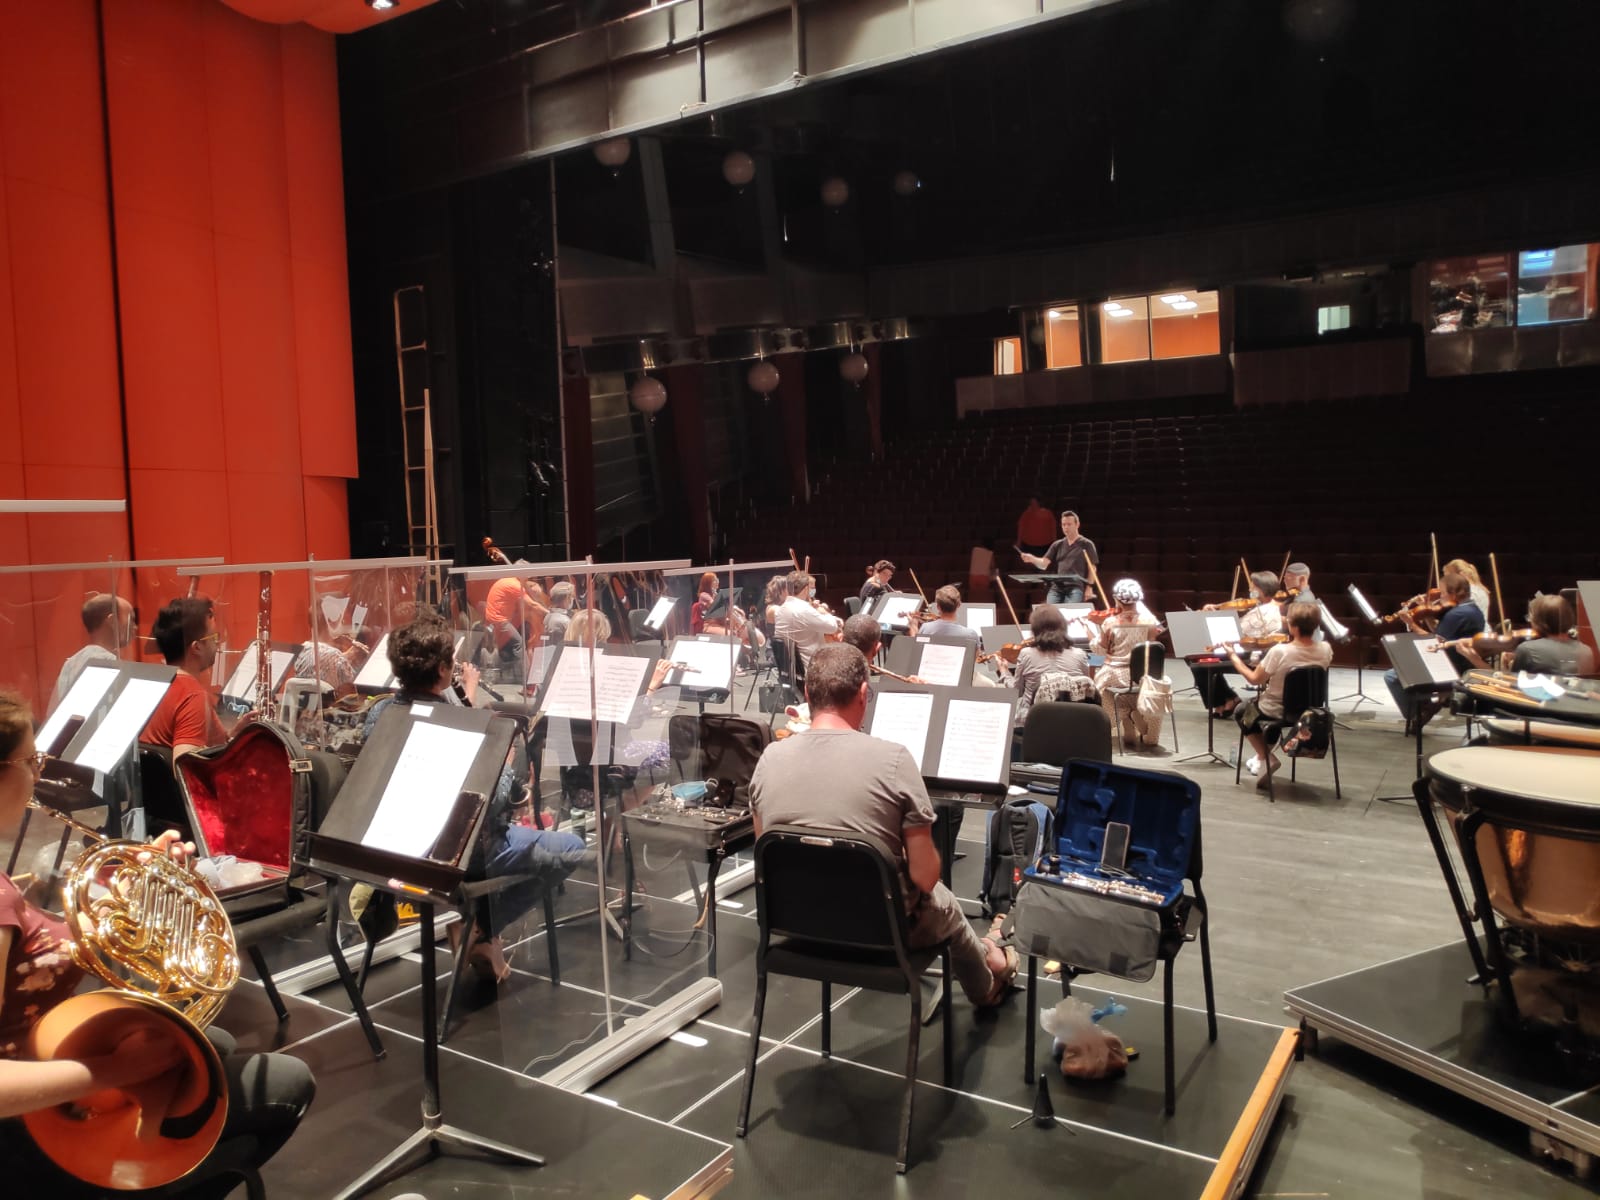 בסלון במקום באולם: הסינפונייטה הישראלית באר שבע תקיים במוצ"ש קונצרט מקוון בשידור חי